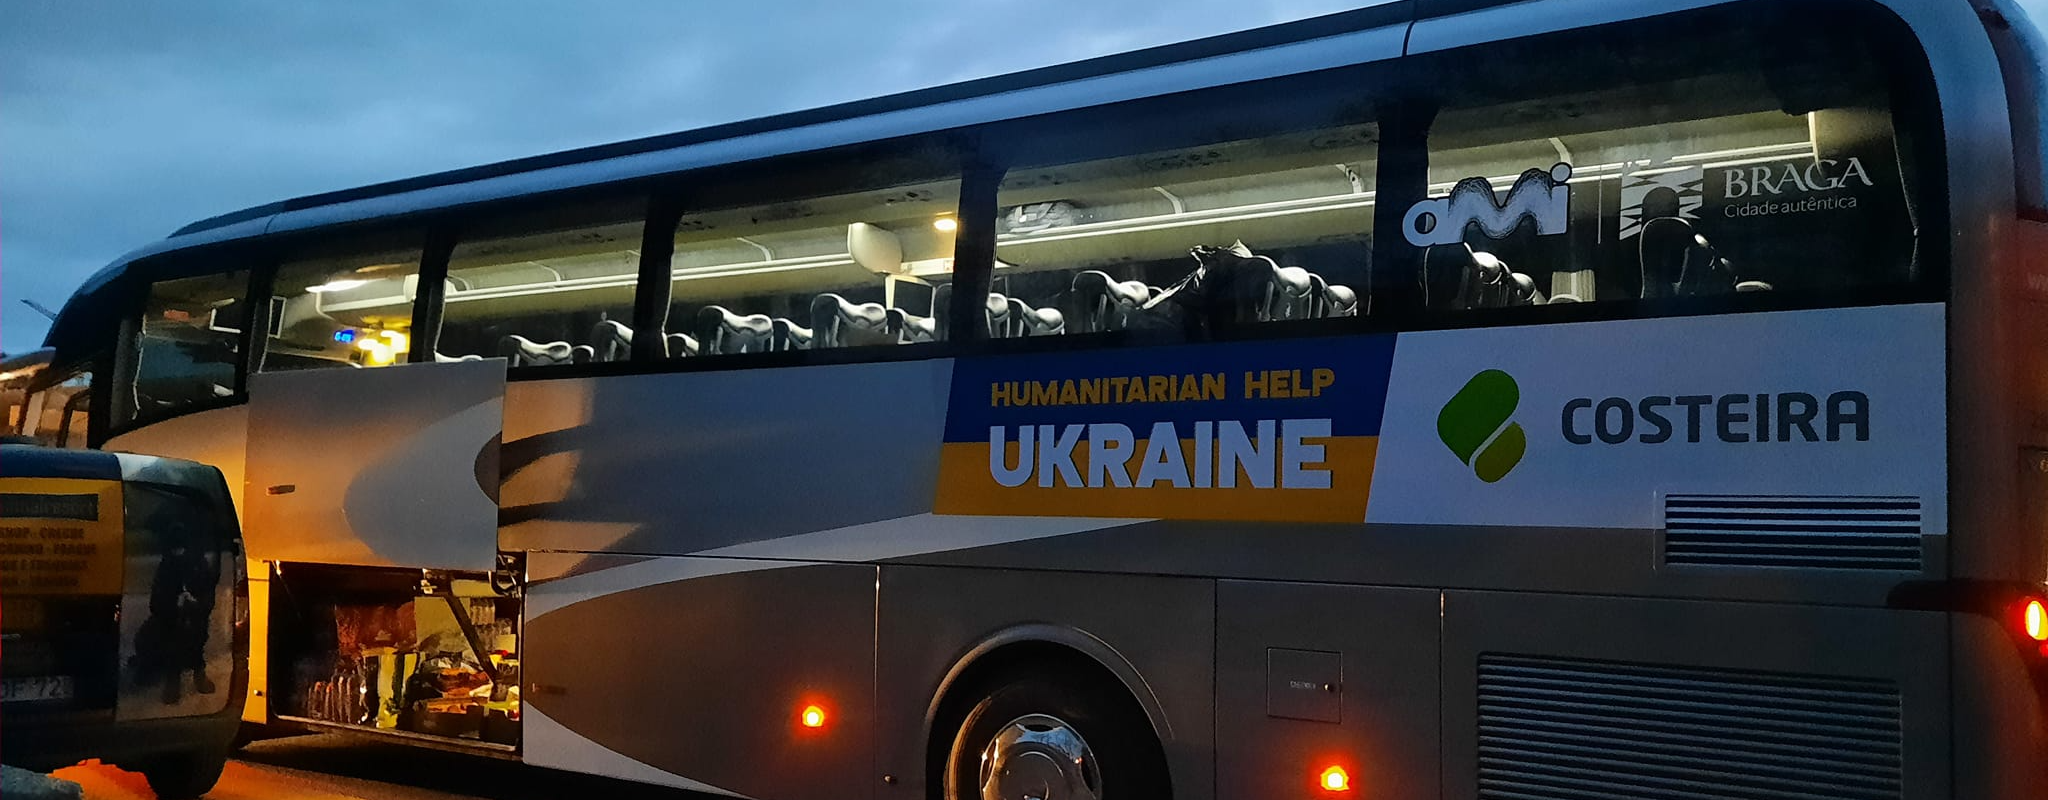 Costeira assegura autocarro para trazer cidadãos Ucranianos